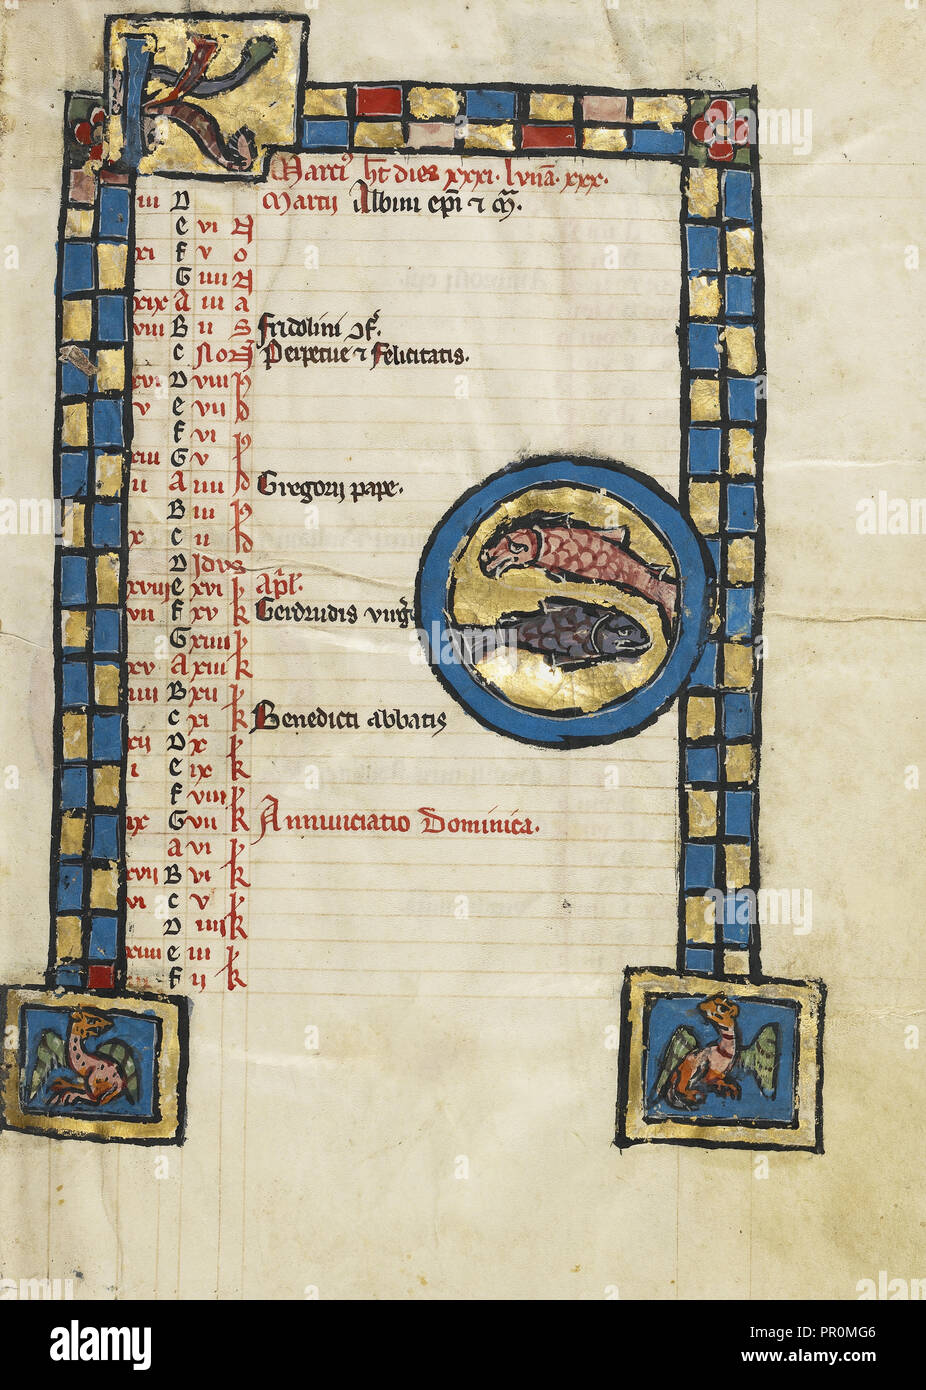 Segno zodiacale dei pesci; Engelberg, Svizzera; terzo quarto del XIII secolo; colori a tempera e foglia oro su pergamena Foto Stock